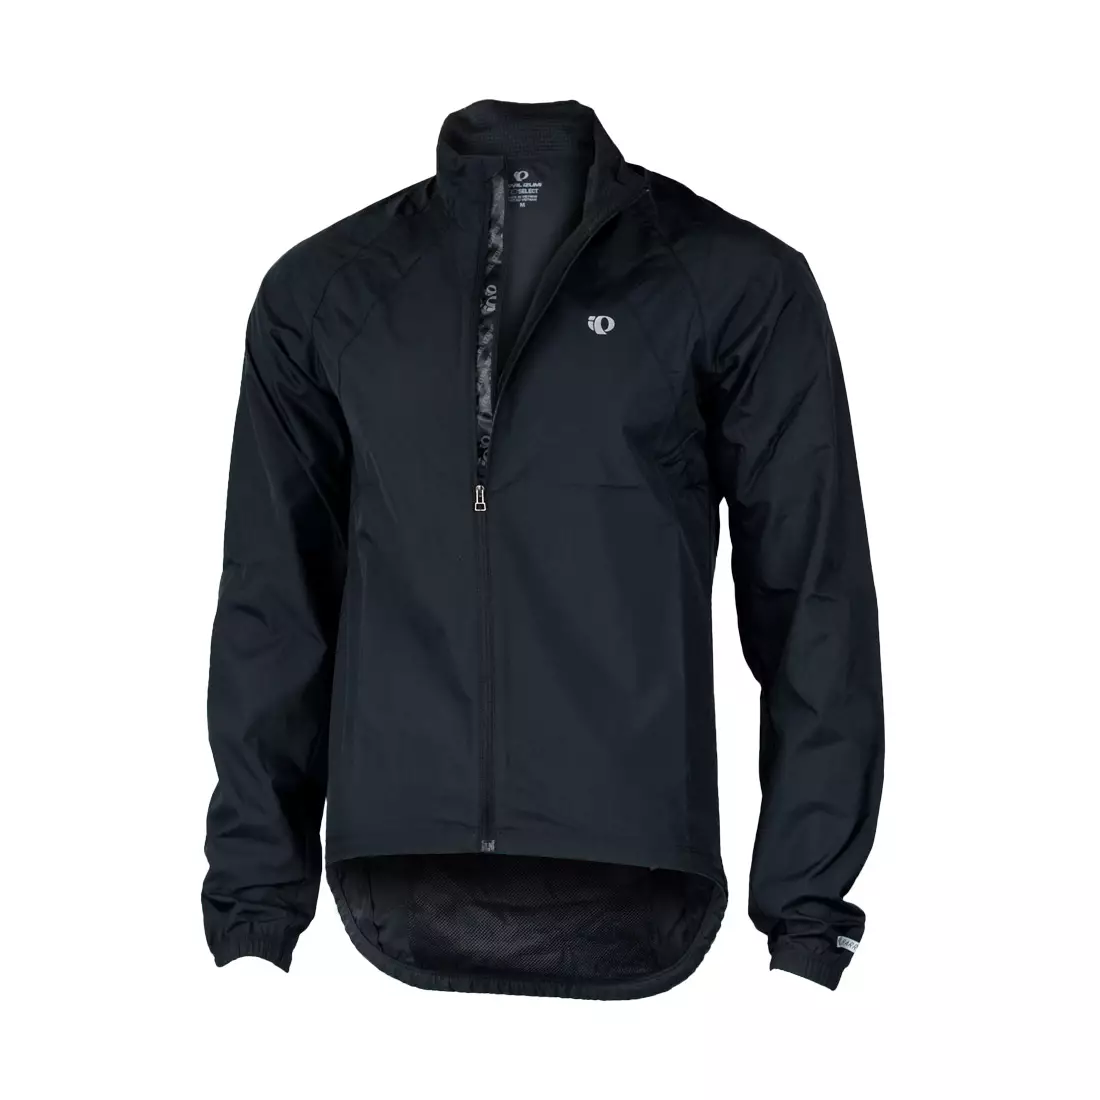 PEARL IZUMI - SELECT Barrier Jacket 11131335-021 - férfi kerékpáros kabát - szín: fekete